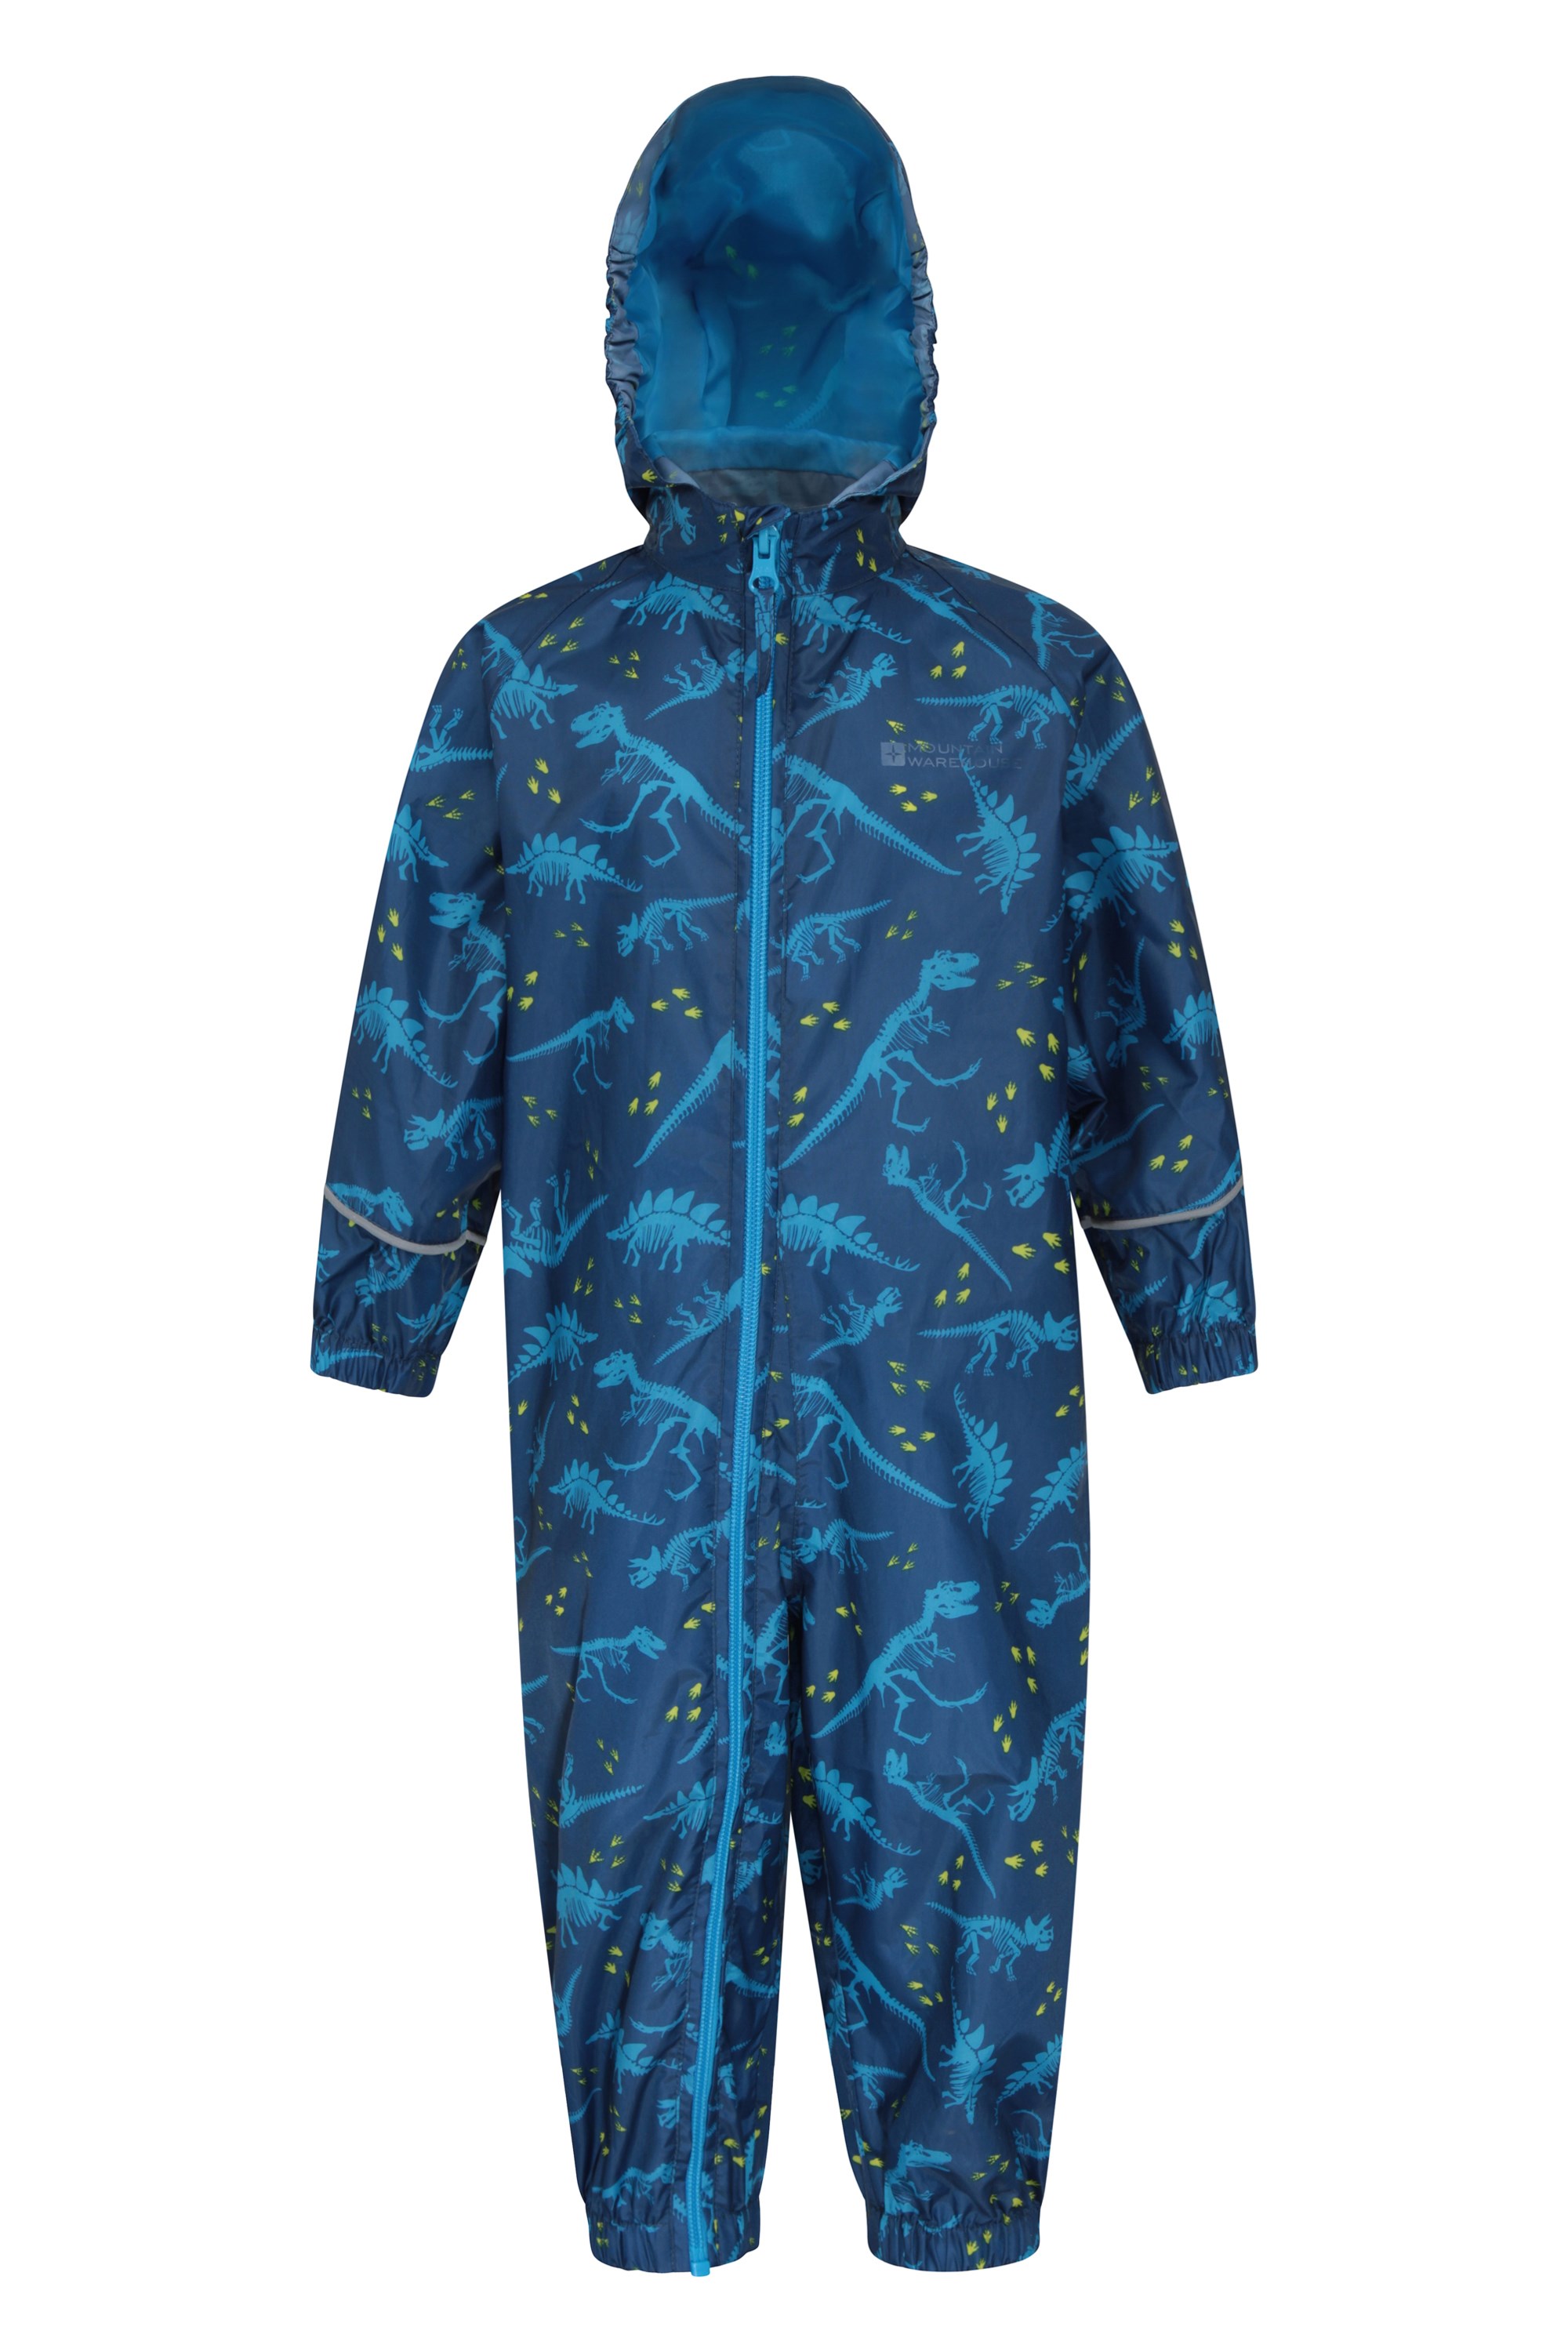 Puddle Kids Printed Waterproof Rain Suit - Blue